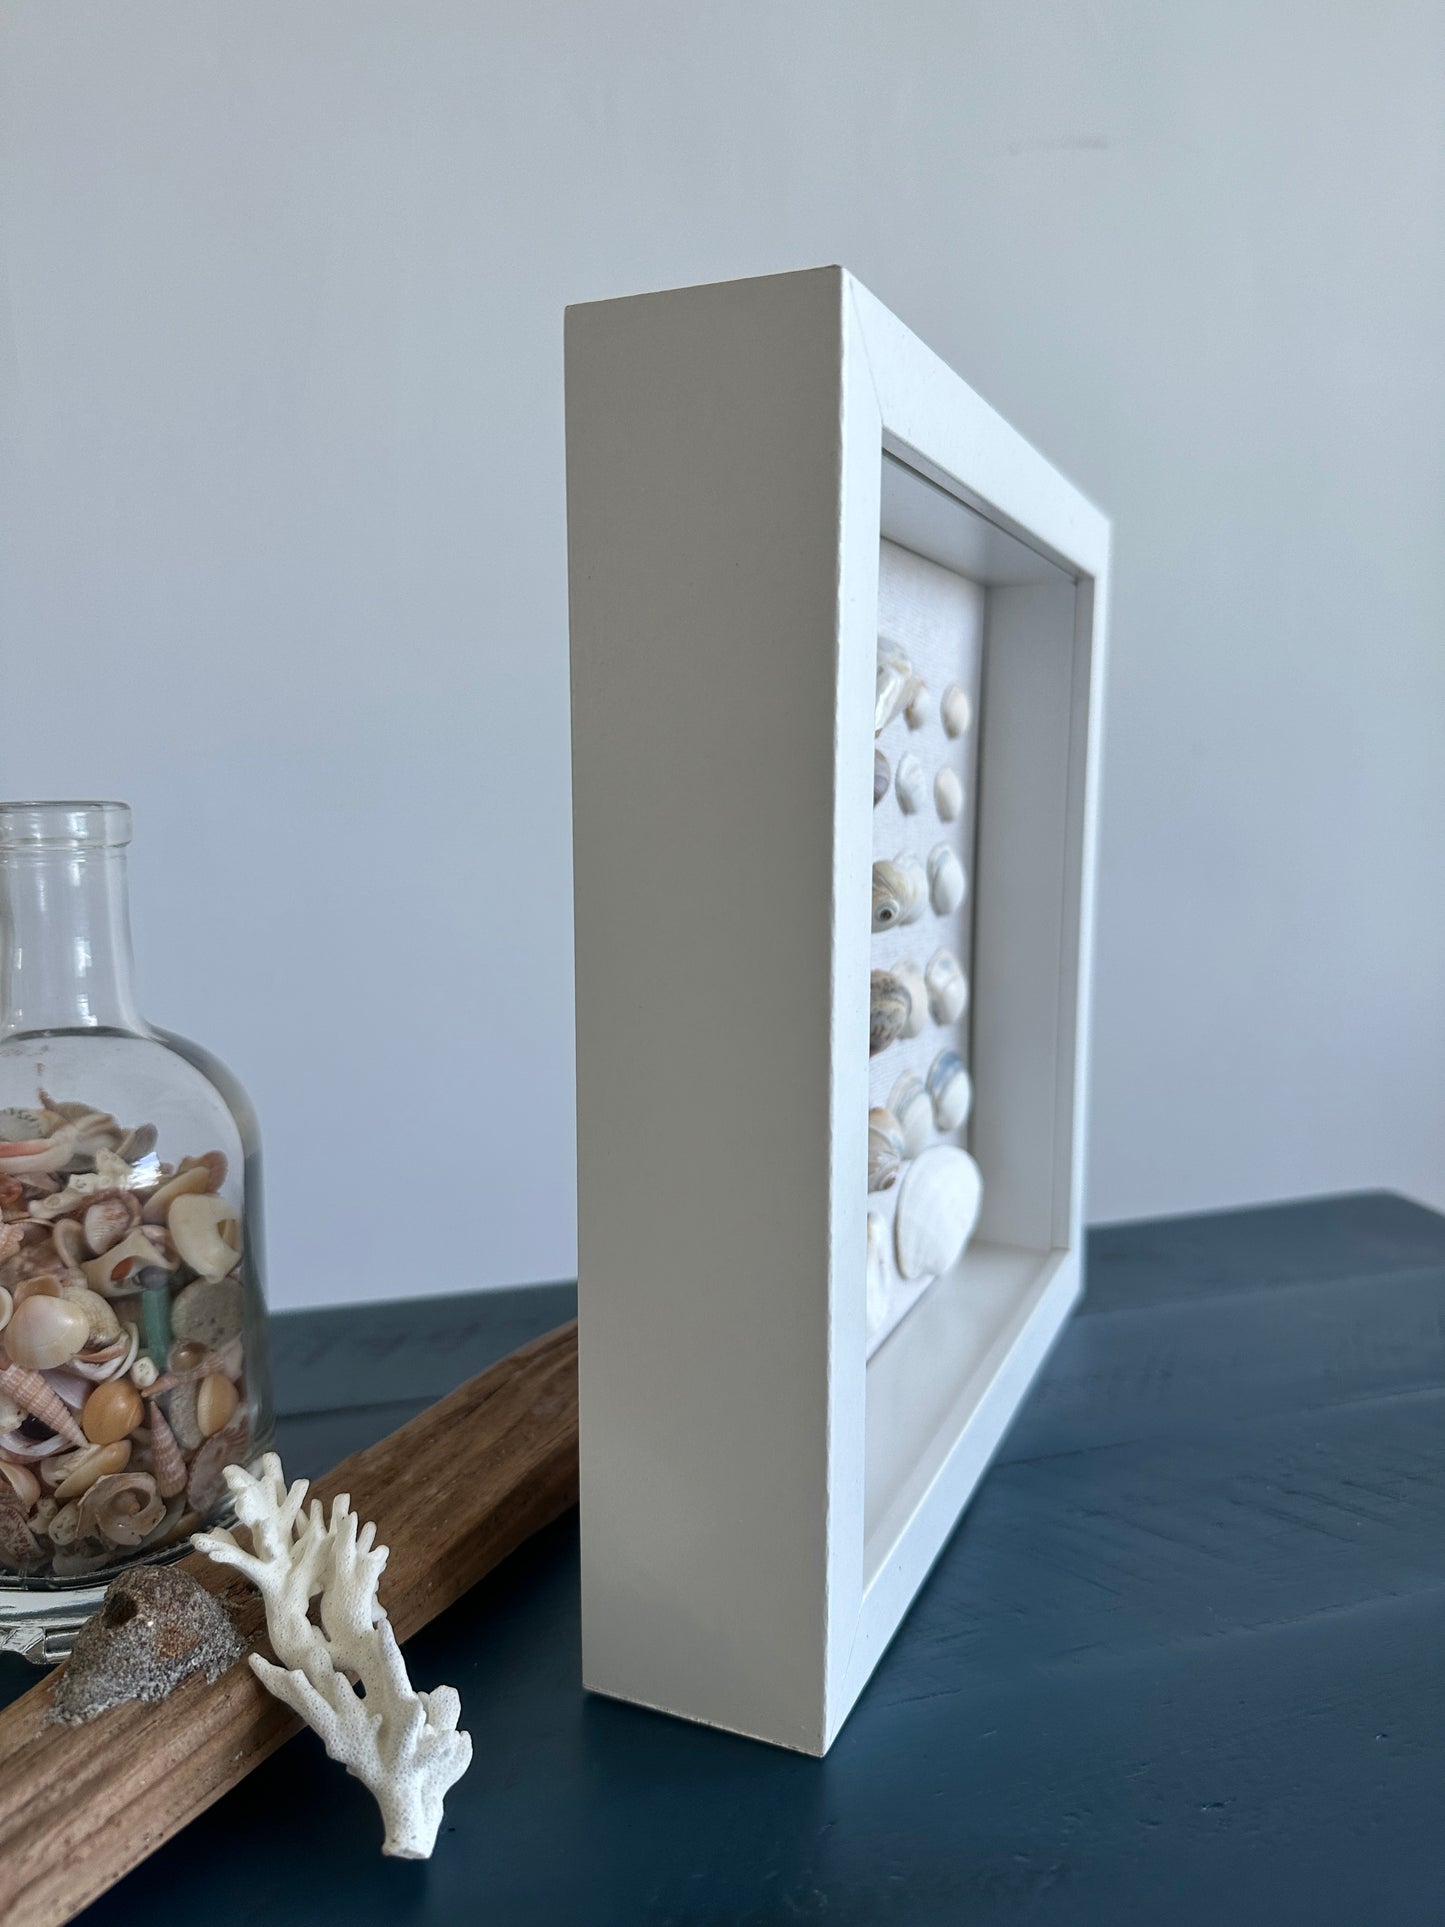 Seashell Art Clam Shells - White Shadow Box